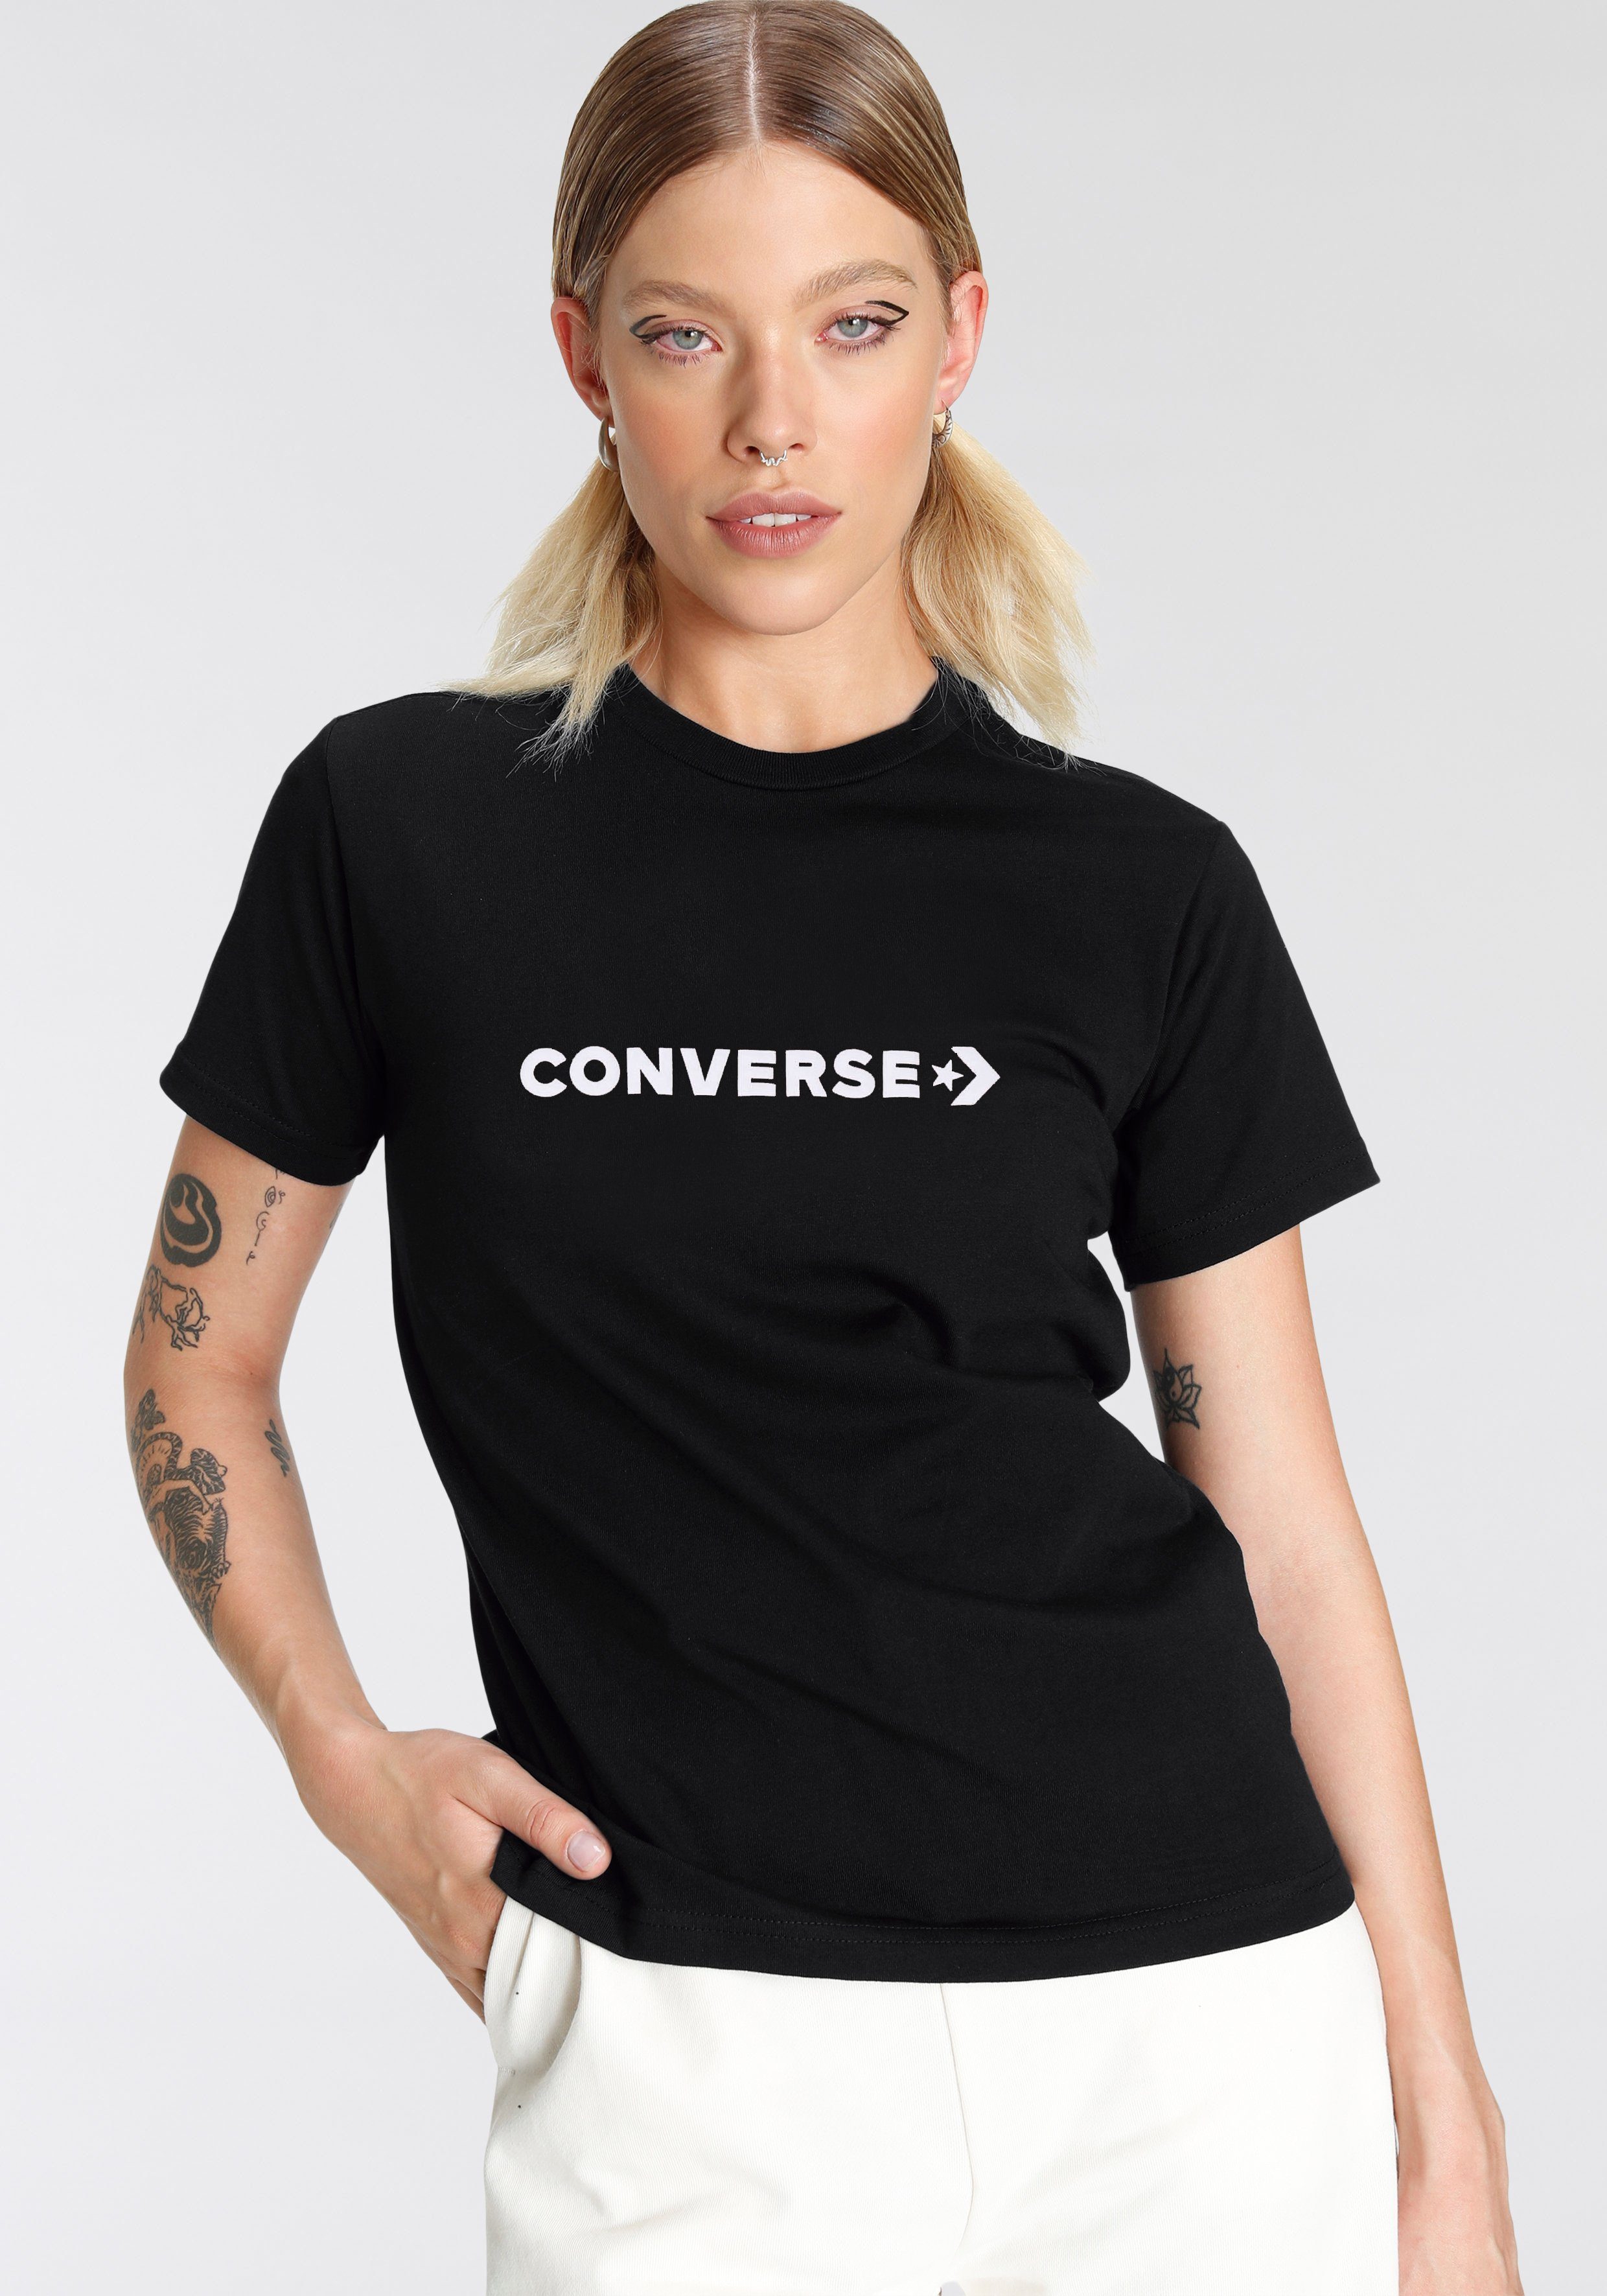 T-Shirt T-Shirt CONVERSE Converse black Damen